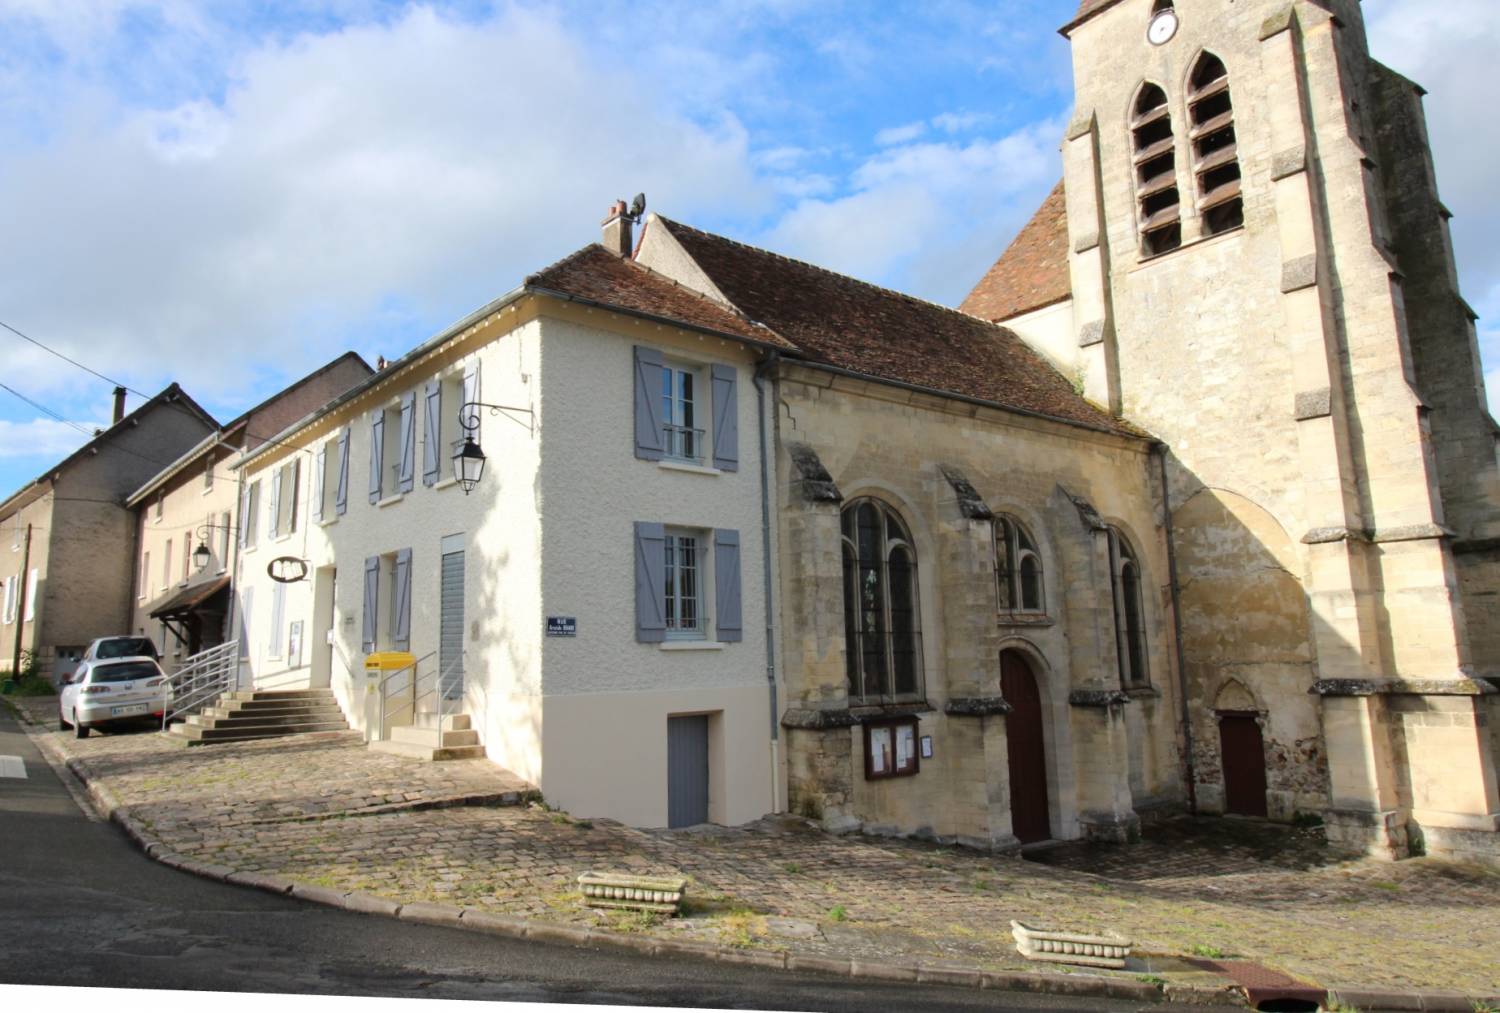 Villiers-Adam (95) - Église Saint-Sulpice - La Sauvegarde de l'Art Français